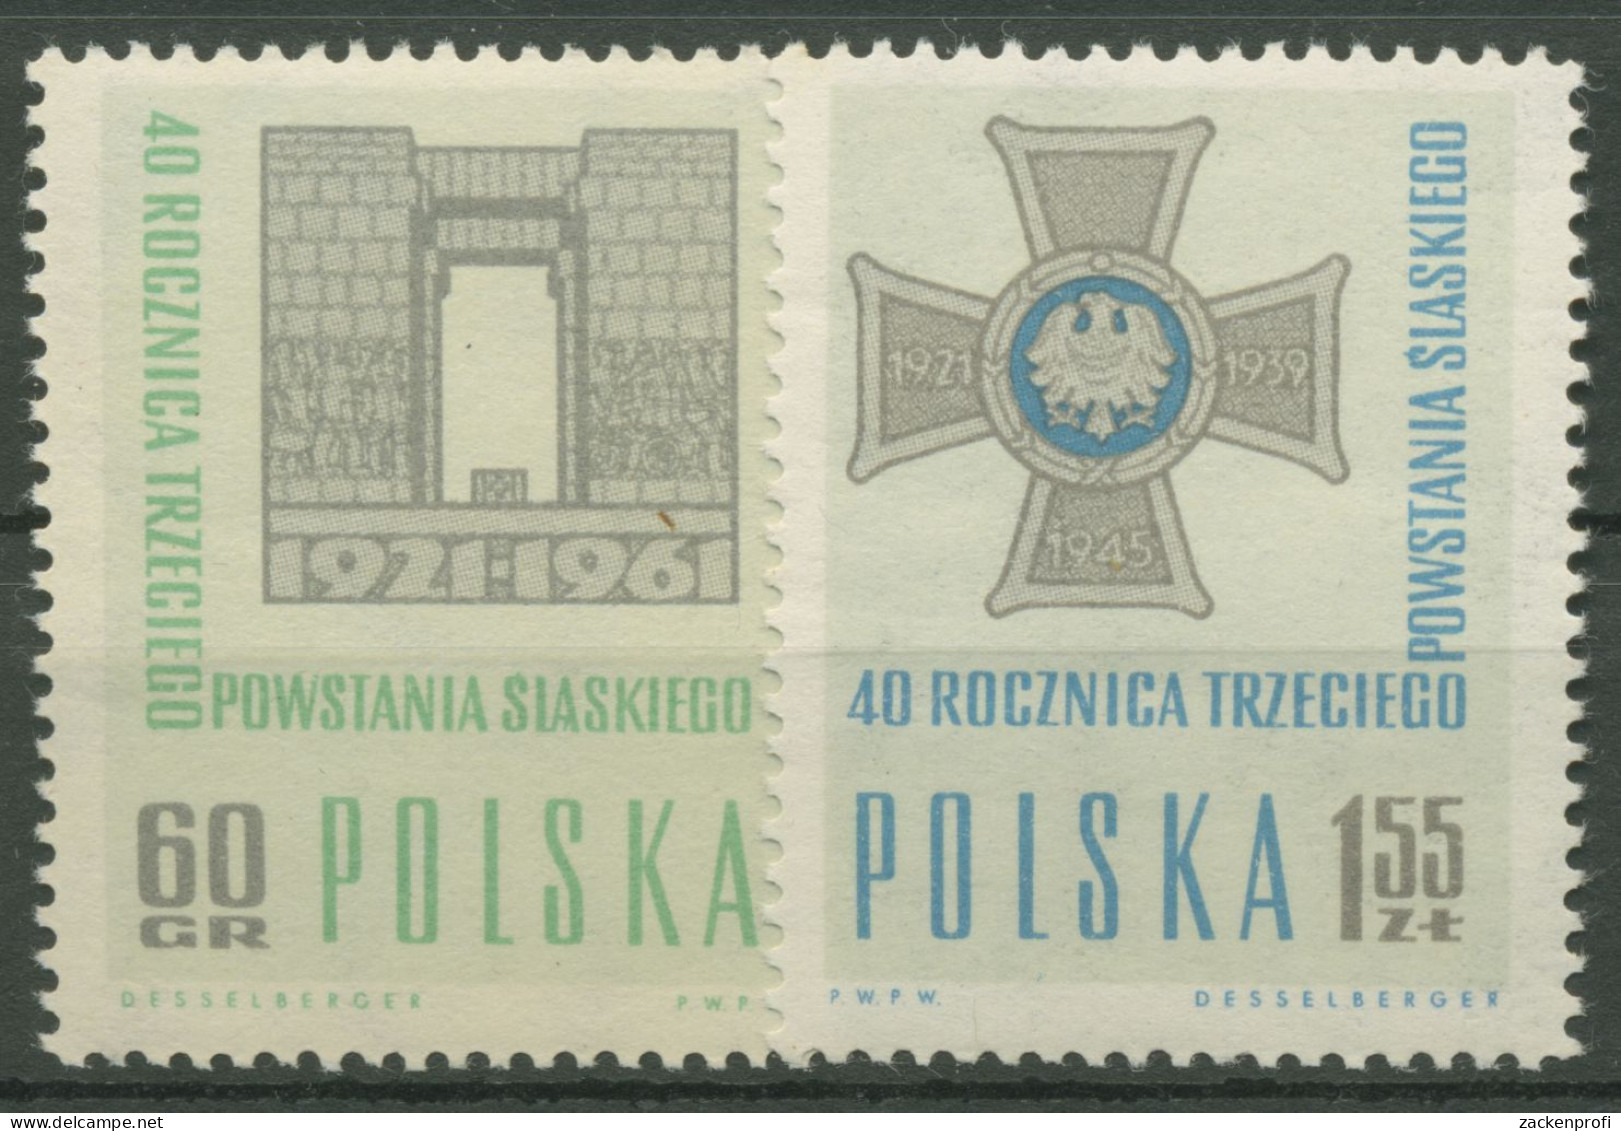 Polen 1961 Schlesischer Aufstand Denkmal 1259/60 Postfrisch - Unused Stamps